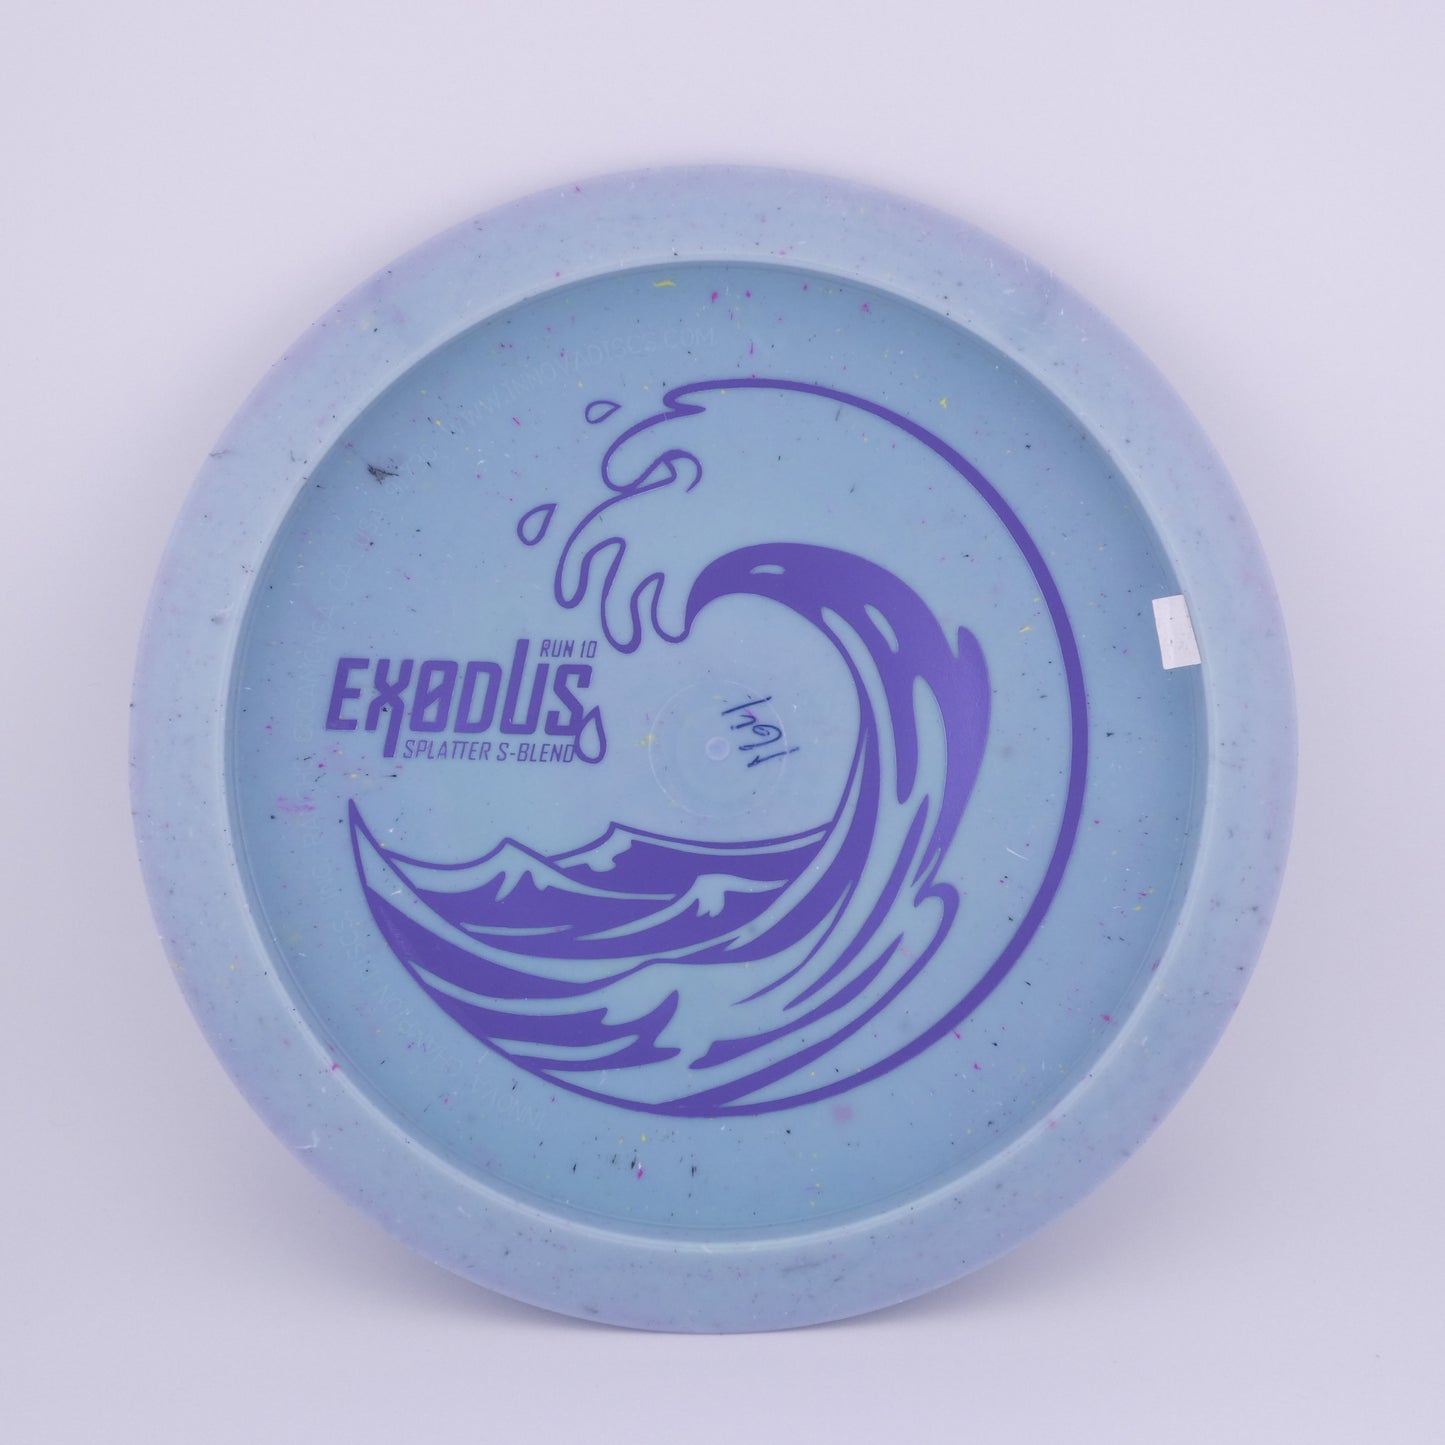 Splatter S-Blend Exodus 160-165g